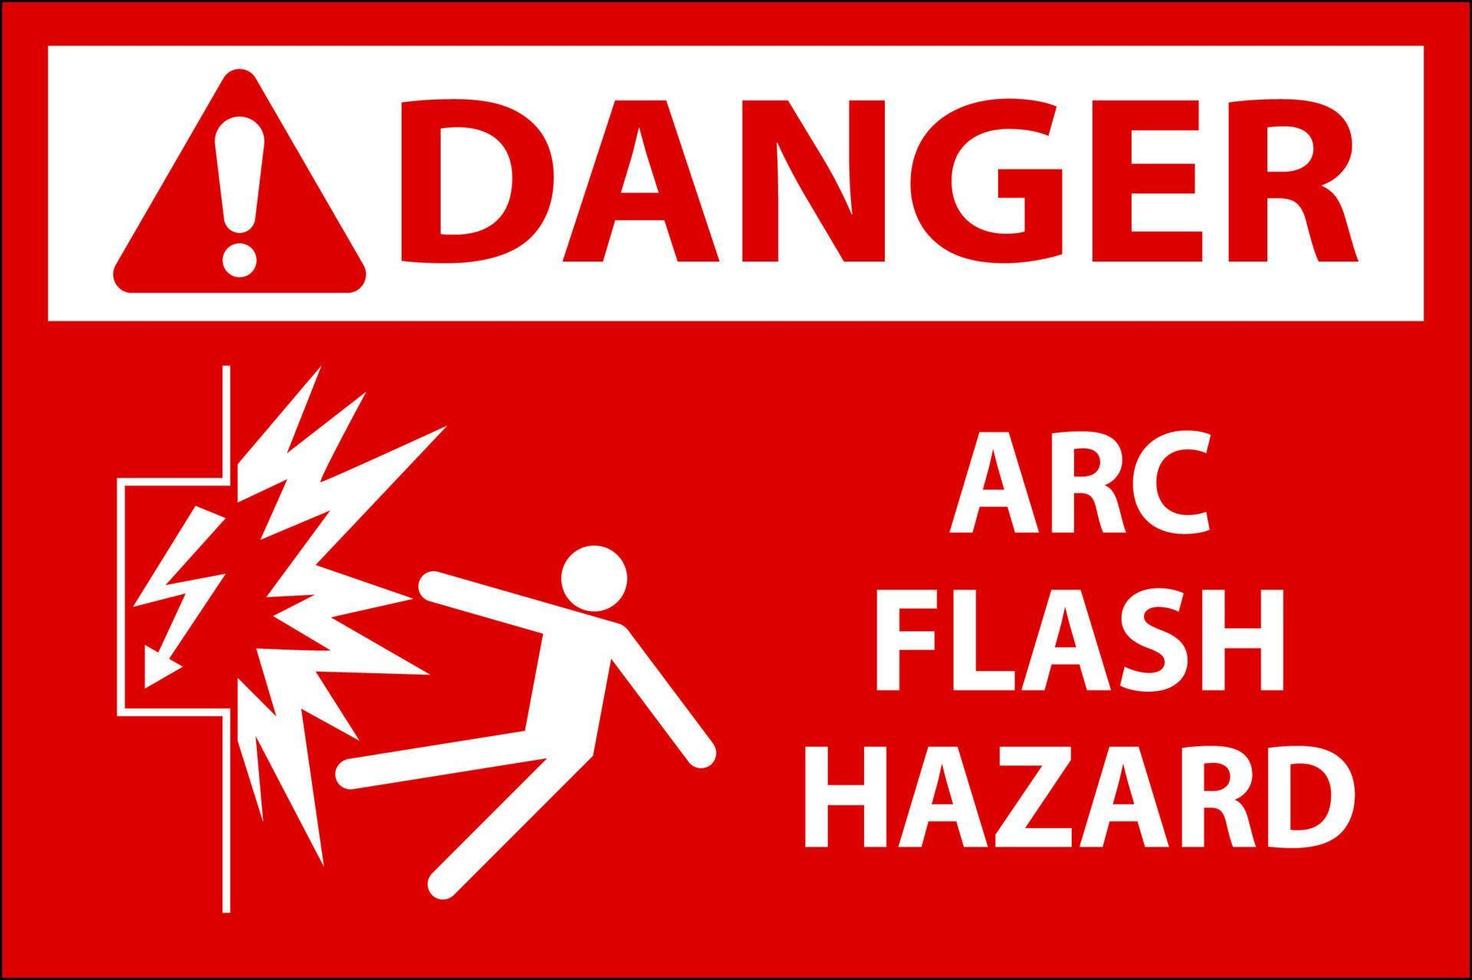 Danger Arc Flash Hazard Sign On White Background vector